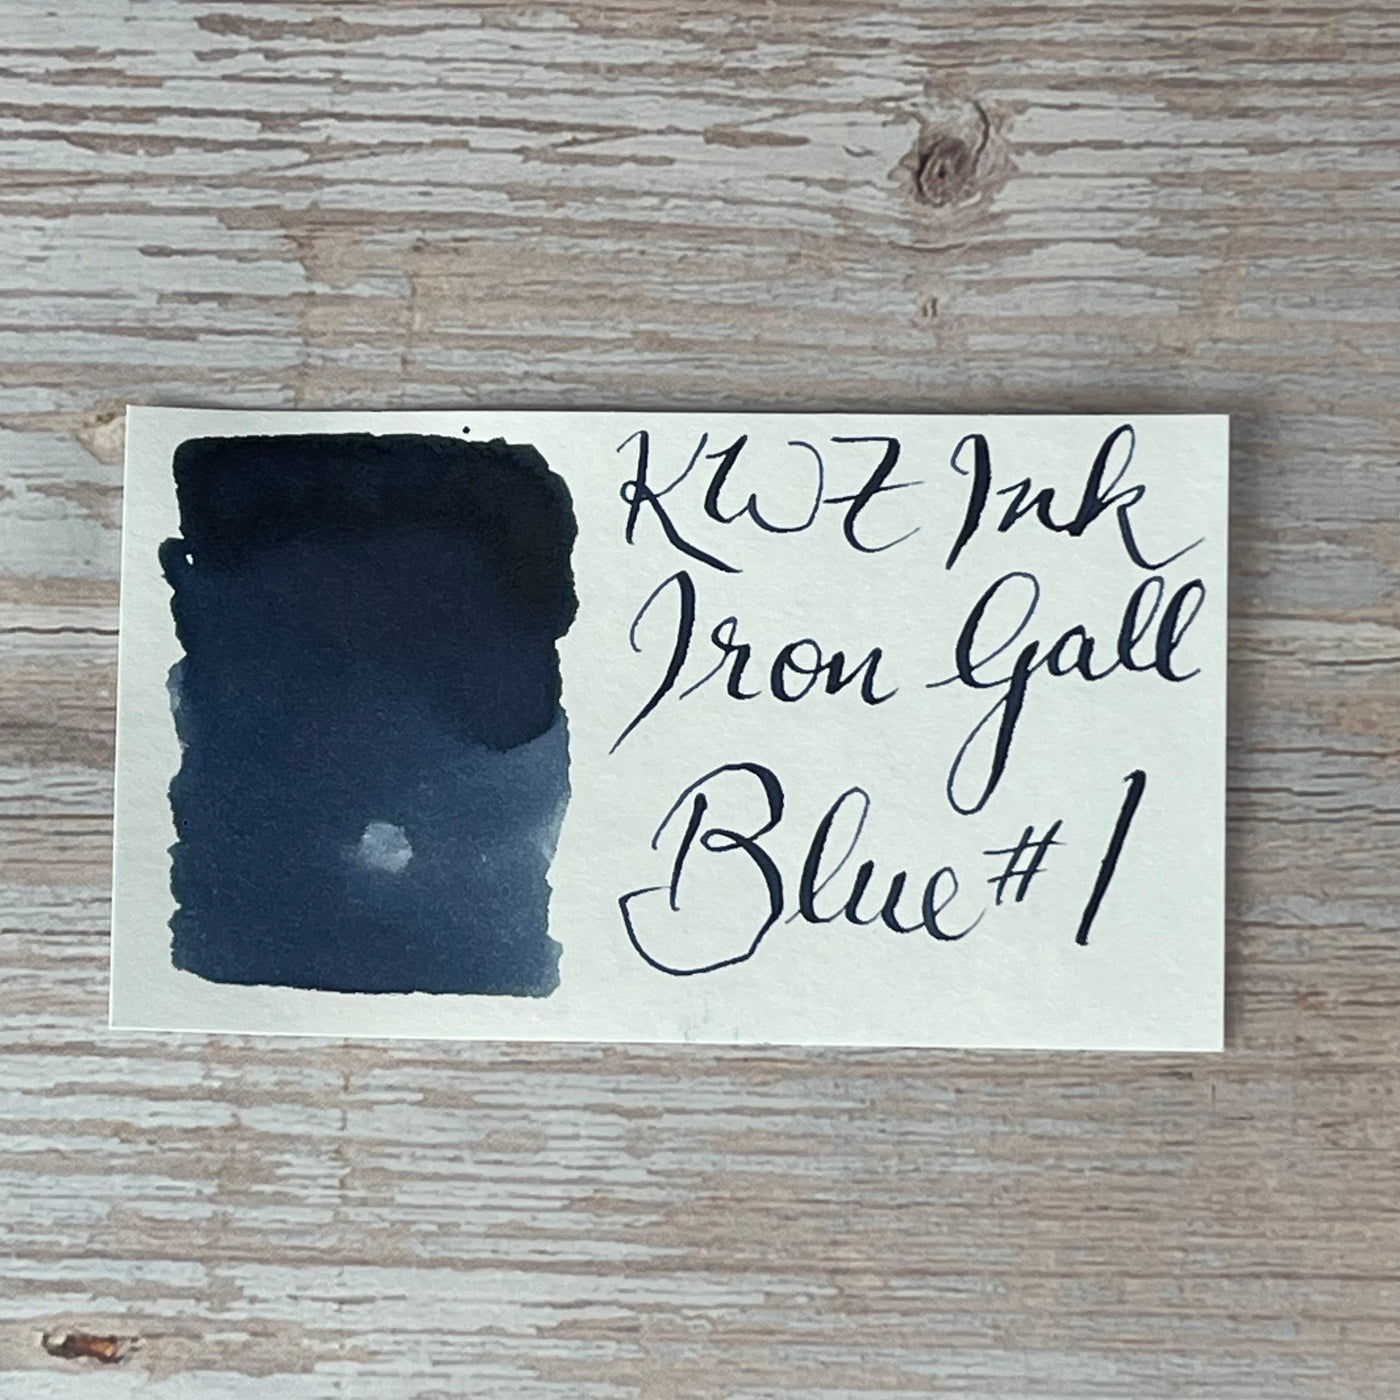 KWZ Iron Gall Blue #1 - 60ml Bottled Inks